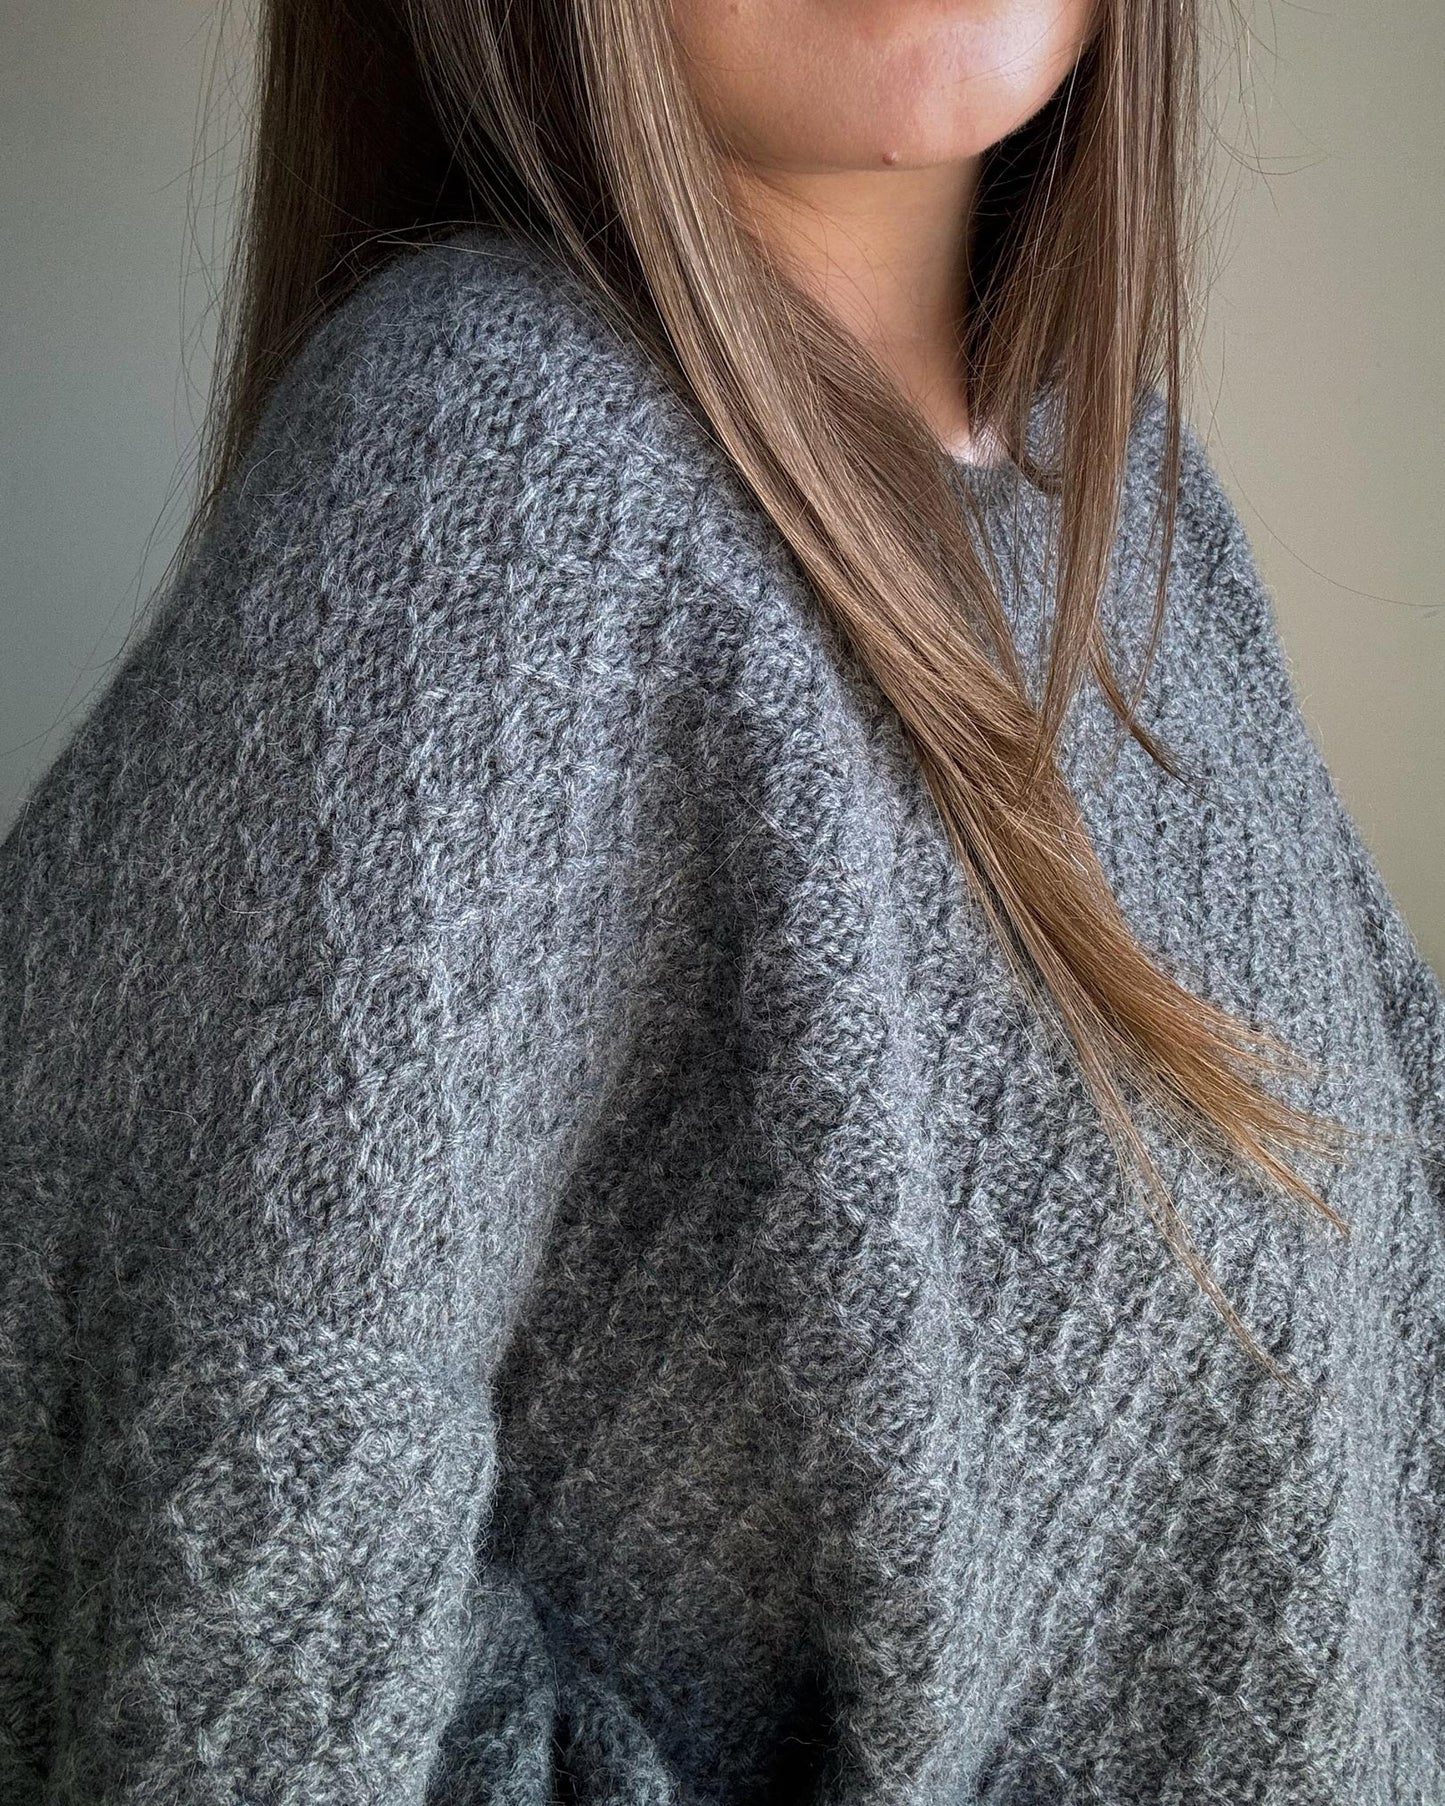 Współczesny wzór na dziergany sweter od morecaknit, idealny dla entuzjastów rękodzieła.